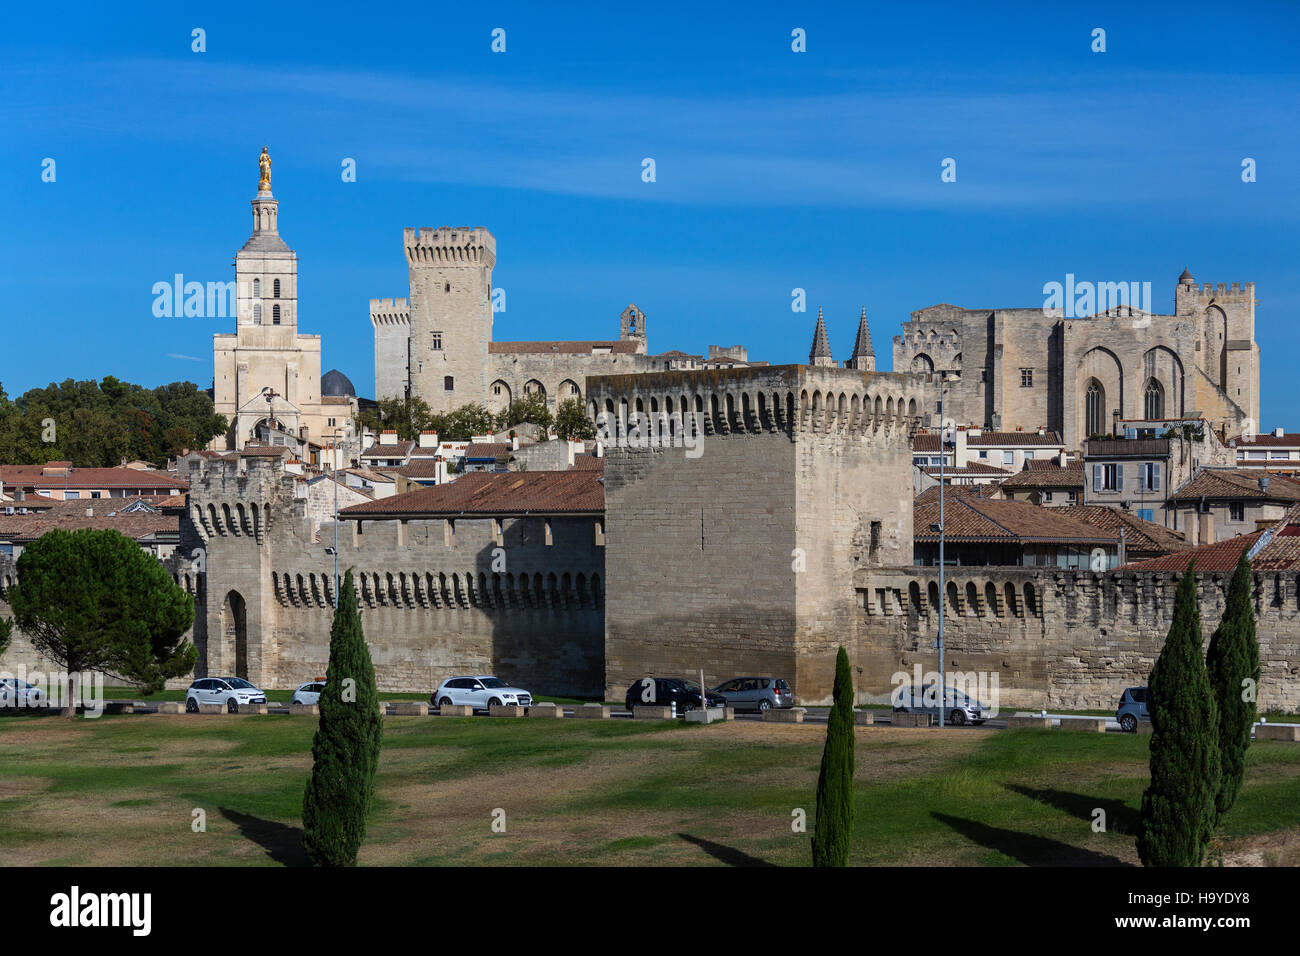 Las murallas de la ciudad, la Catedral de Avignon y el Palais des Papes de la ciudad de Avignon, en el sudeste de Francia. Foto de stock